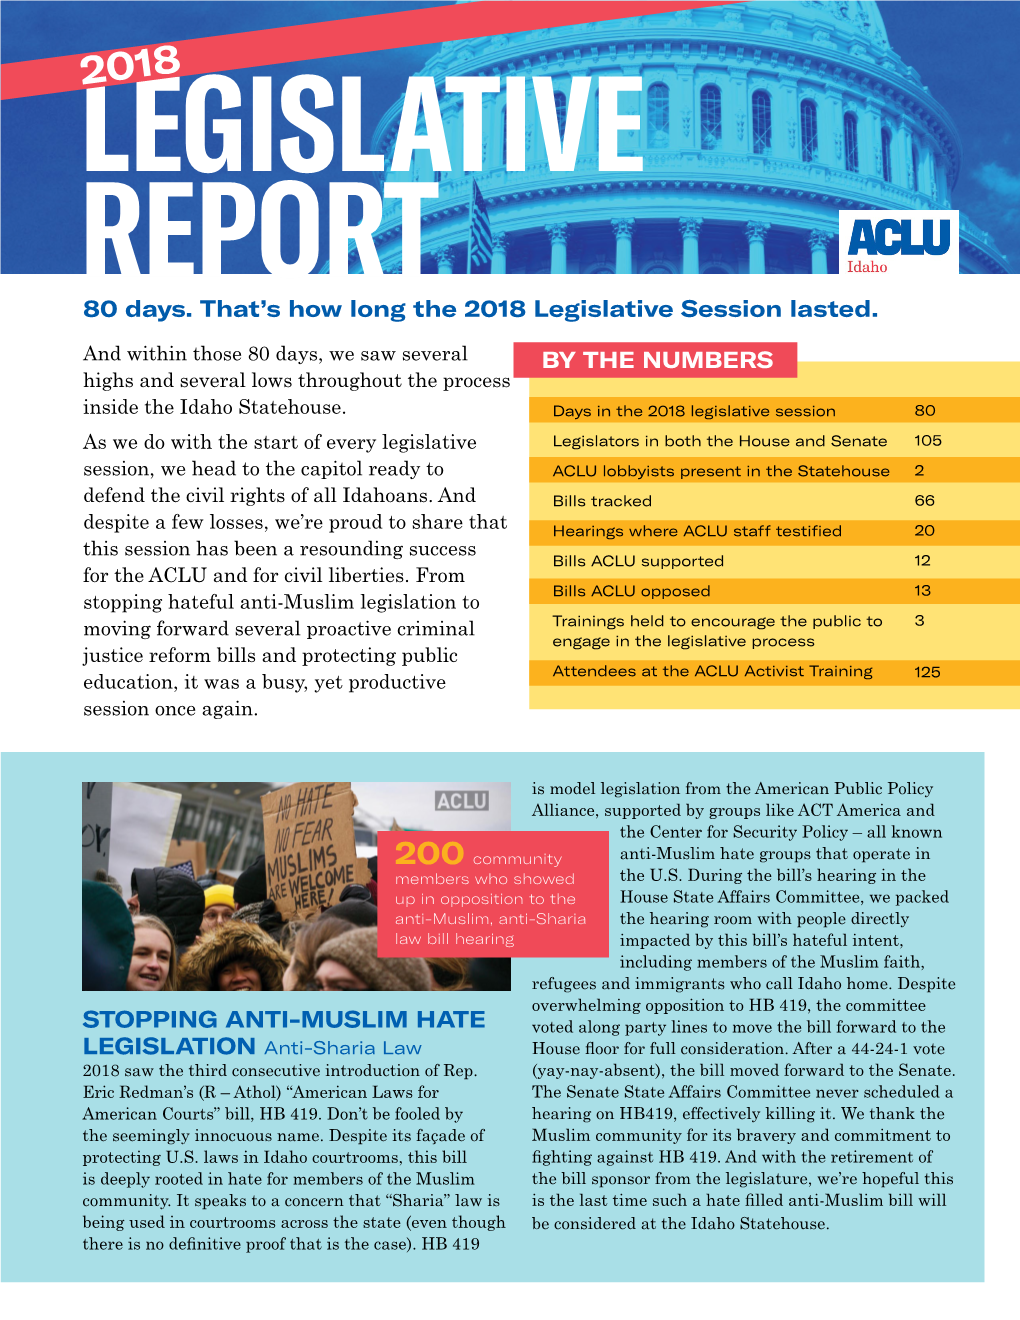 2018 Legislative Report/Legislative Scorecard